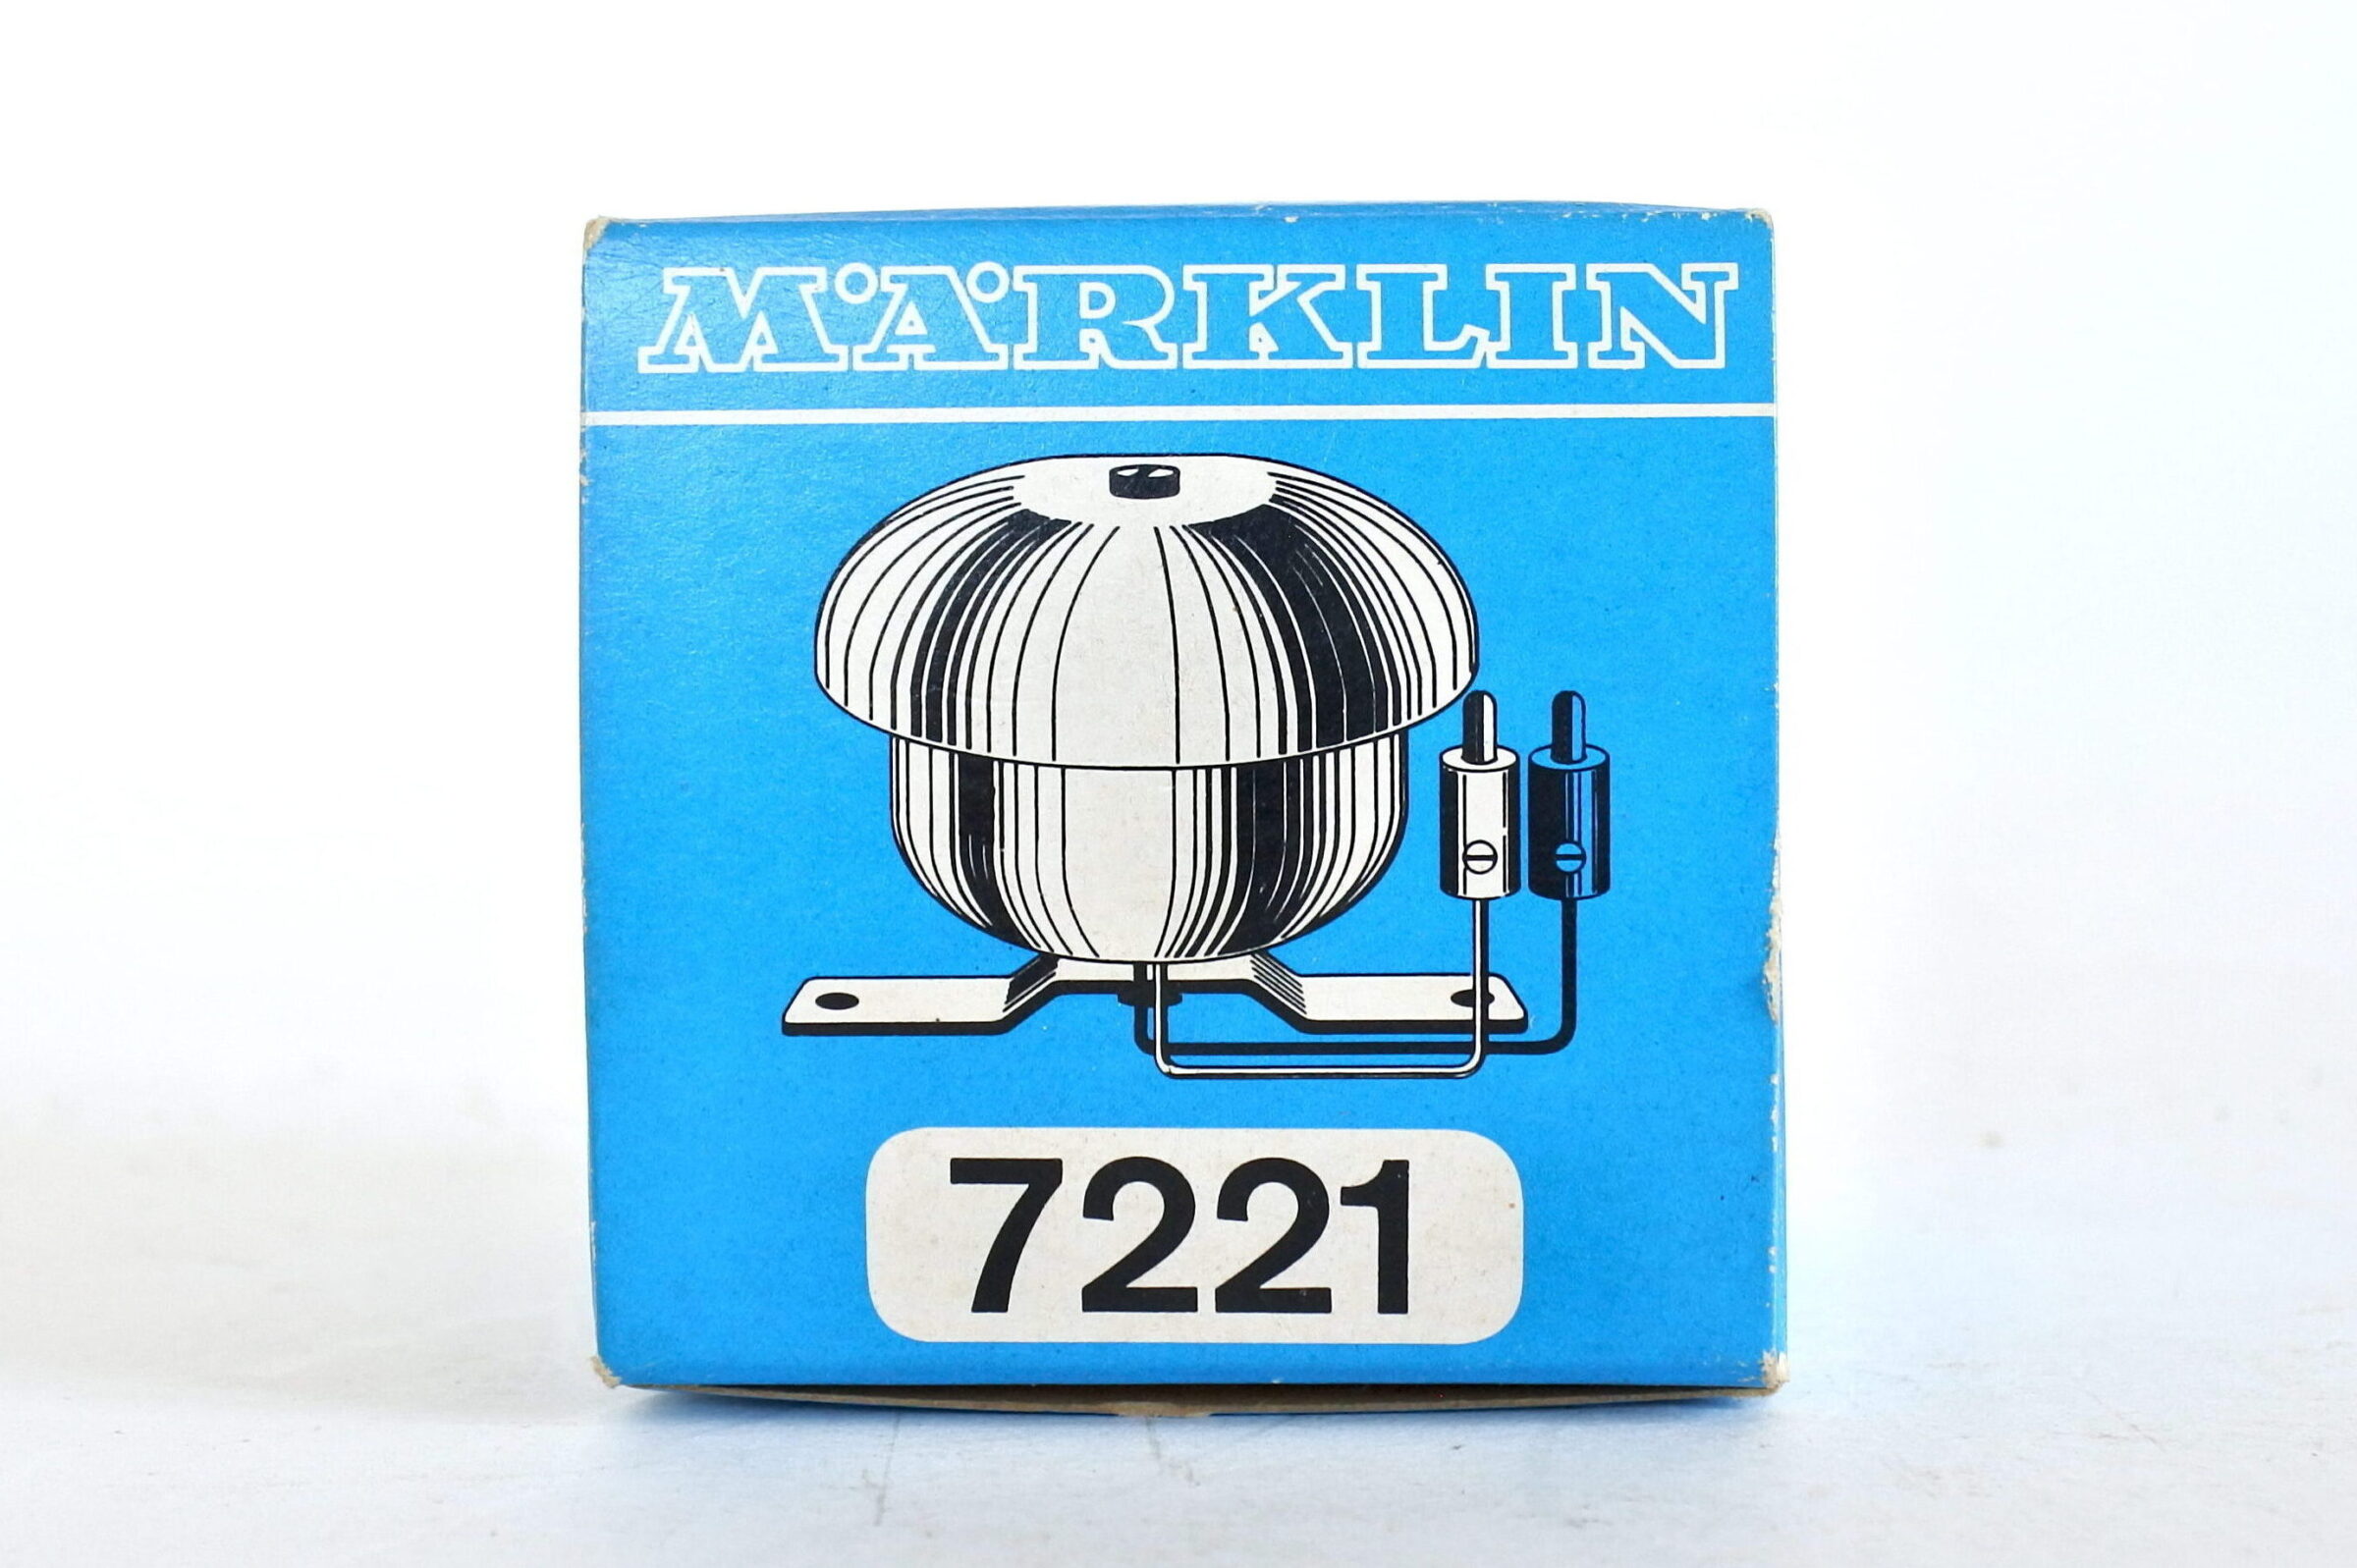 Suoneria elettrica Marklin 7221 con scatola e istruzioni originali - 4